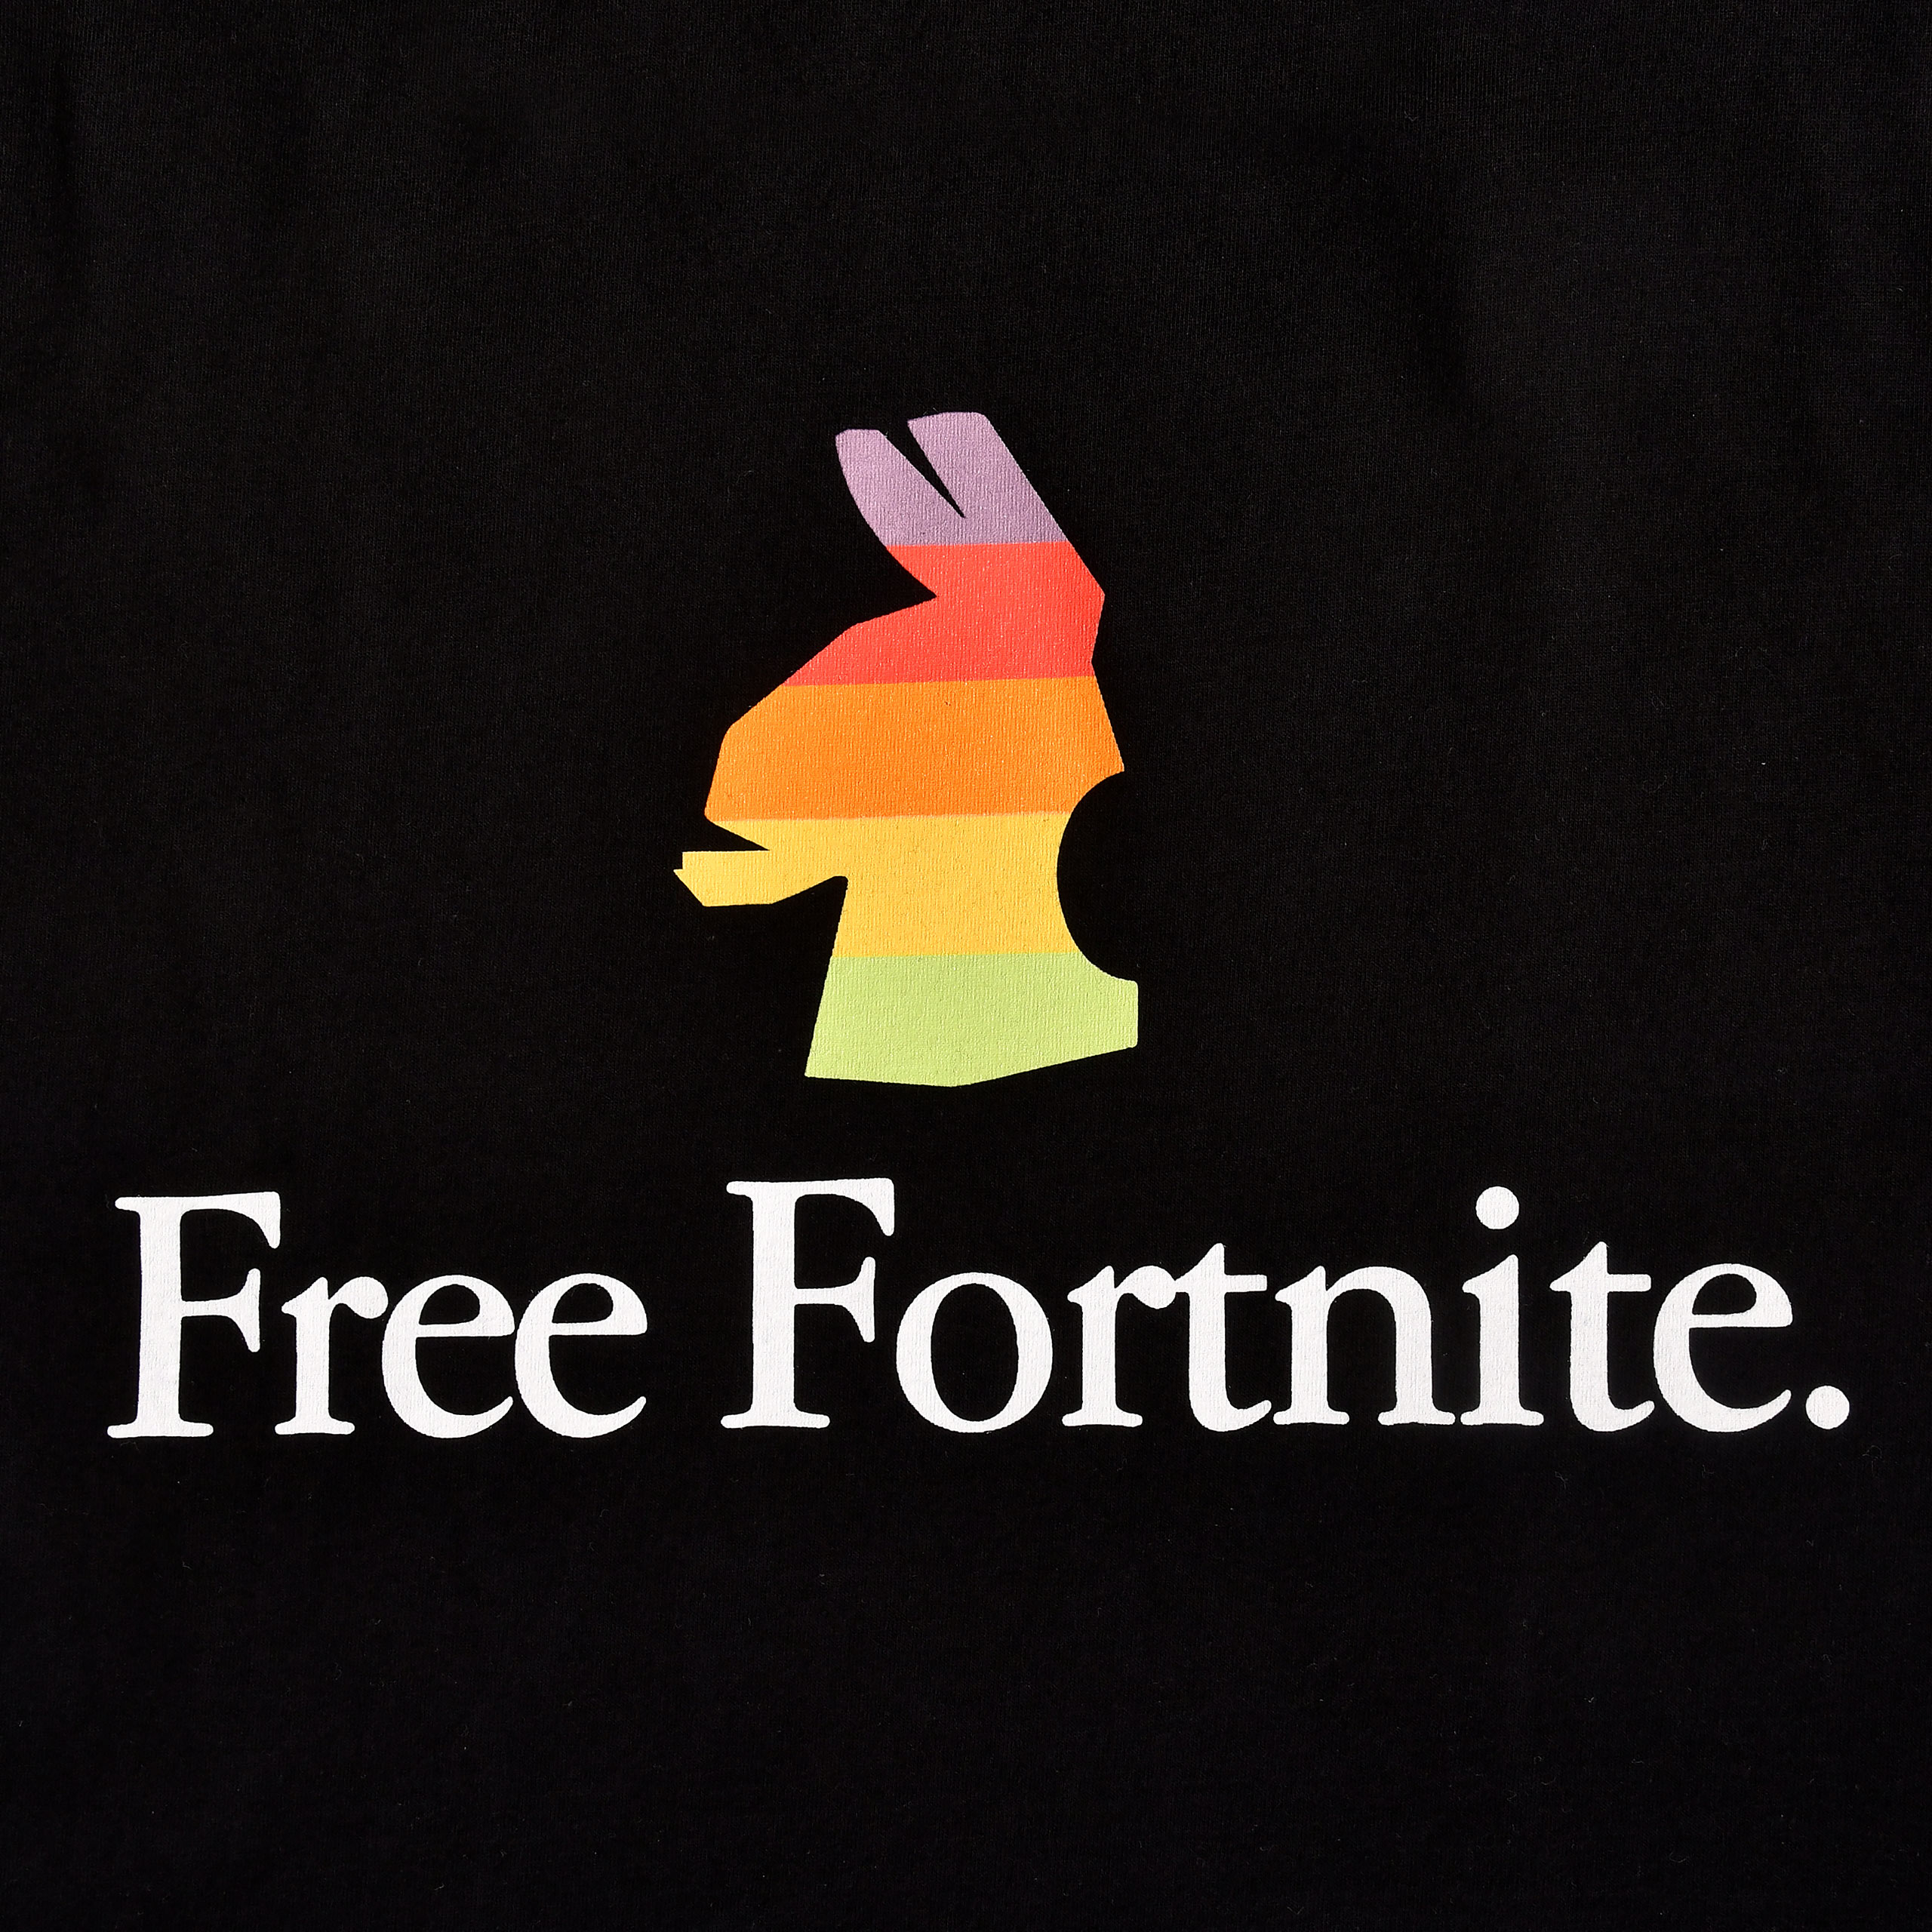 Fortnite - Free Fortnite T-Shirt schwarz